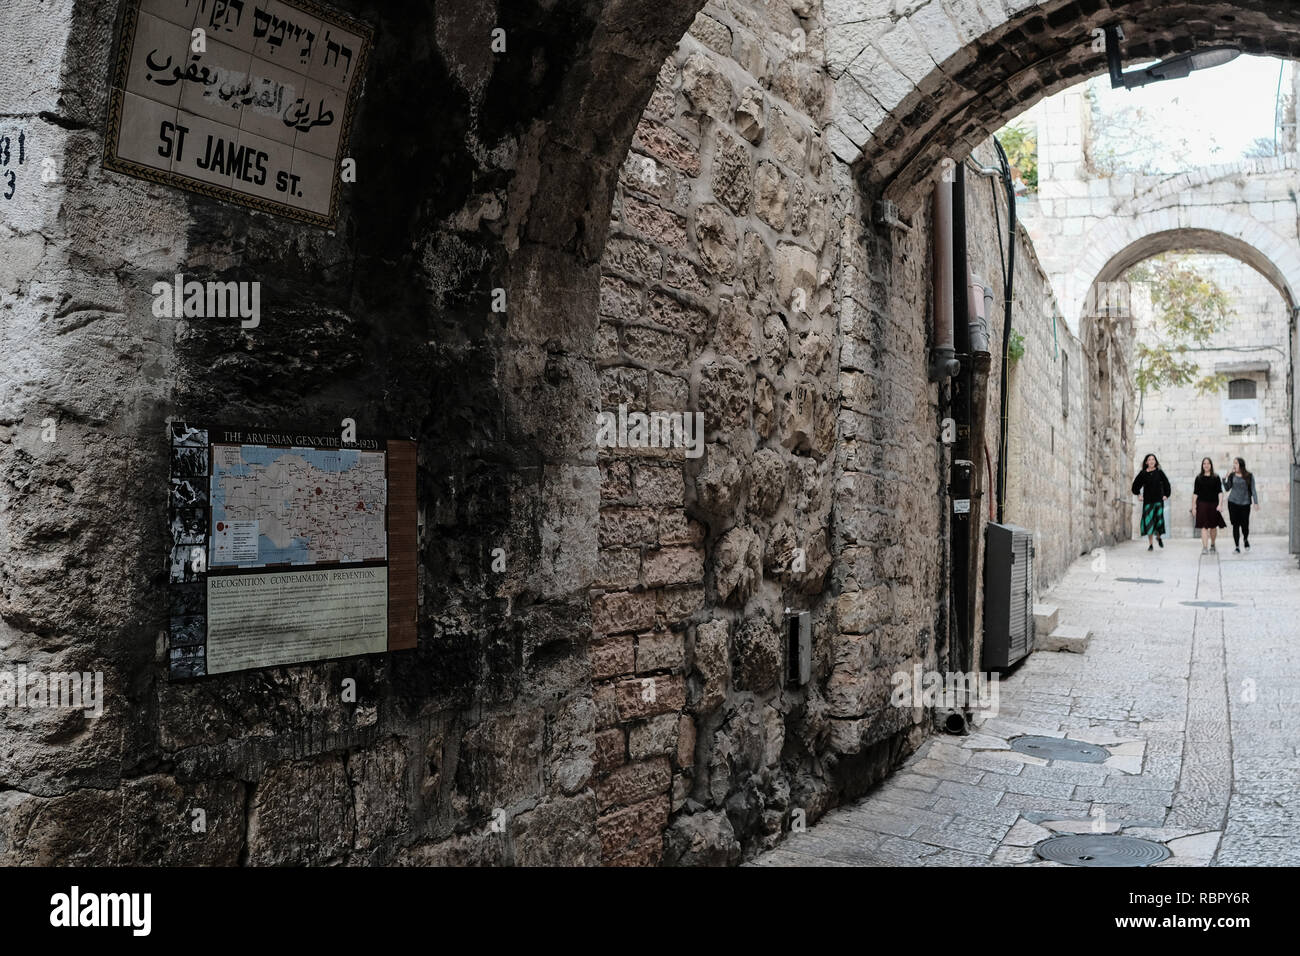 St James Street conduce i pedoni dal Quartiere Armeno il quartiere ebraico di Gerusalemme la città vecchia. Foto Stock